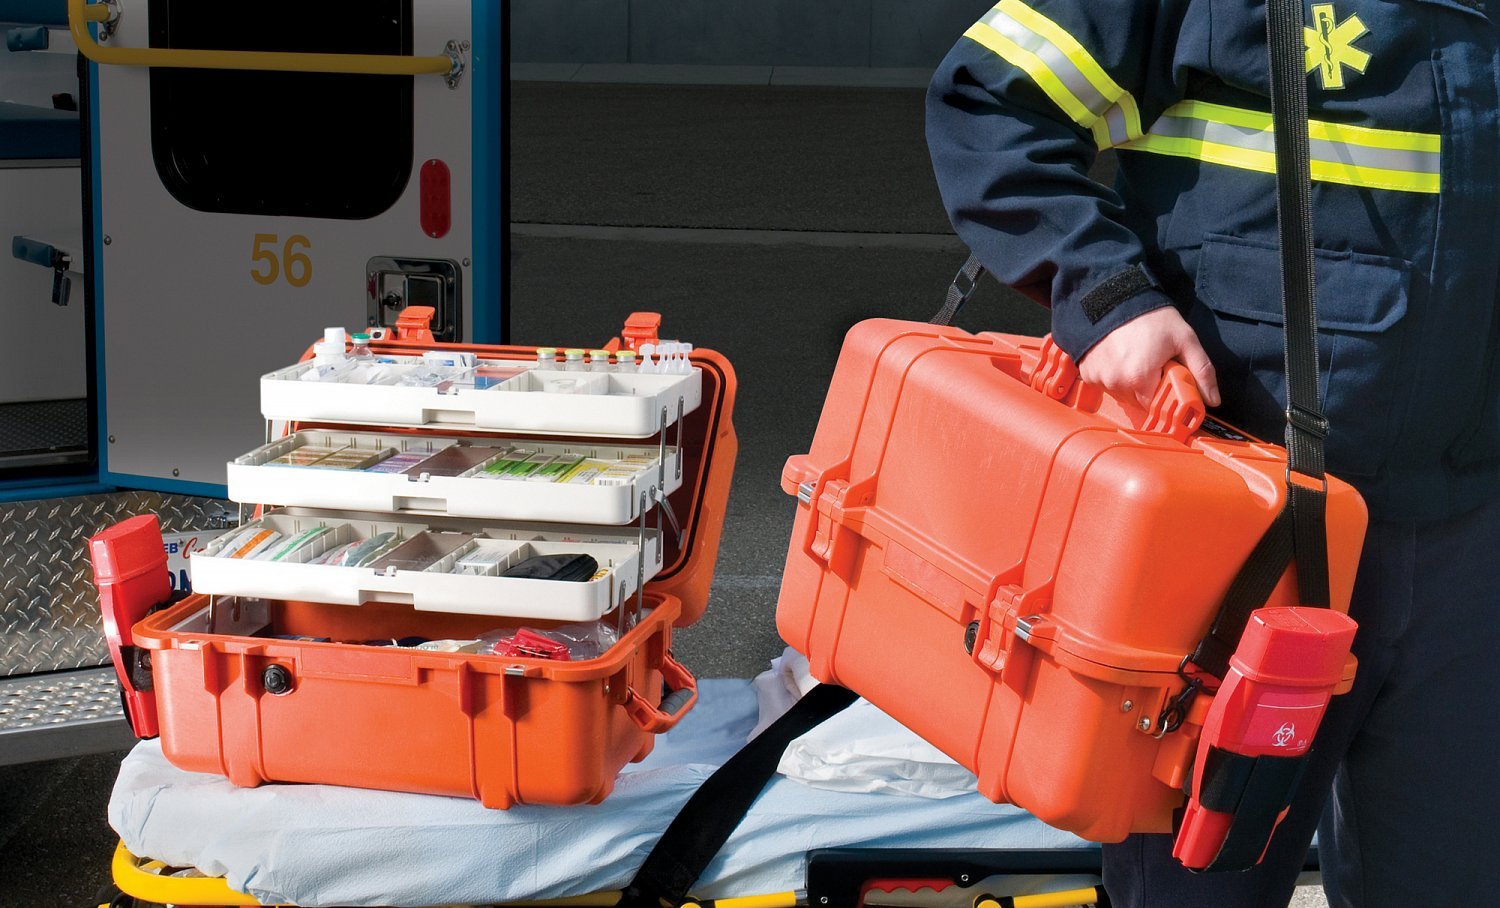 Укладка врача скорой медицинской. Кейс peli 1460 ems. Оранжевый чемоданчик скорой помощи. Медицинский чемодан для скорой. Чемодан фельдшера.